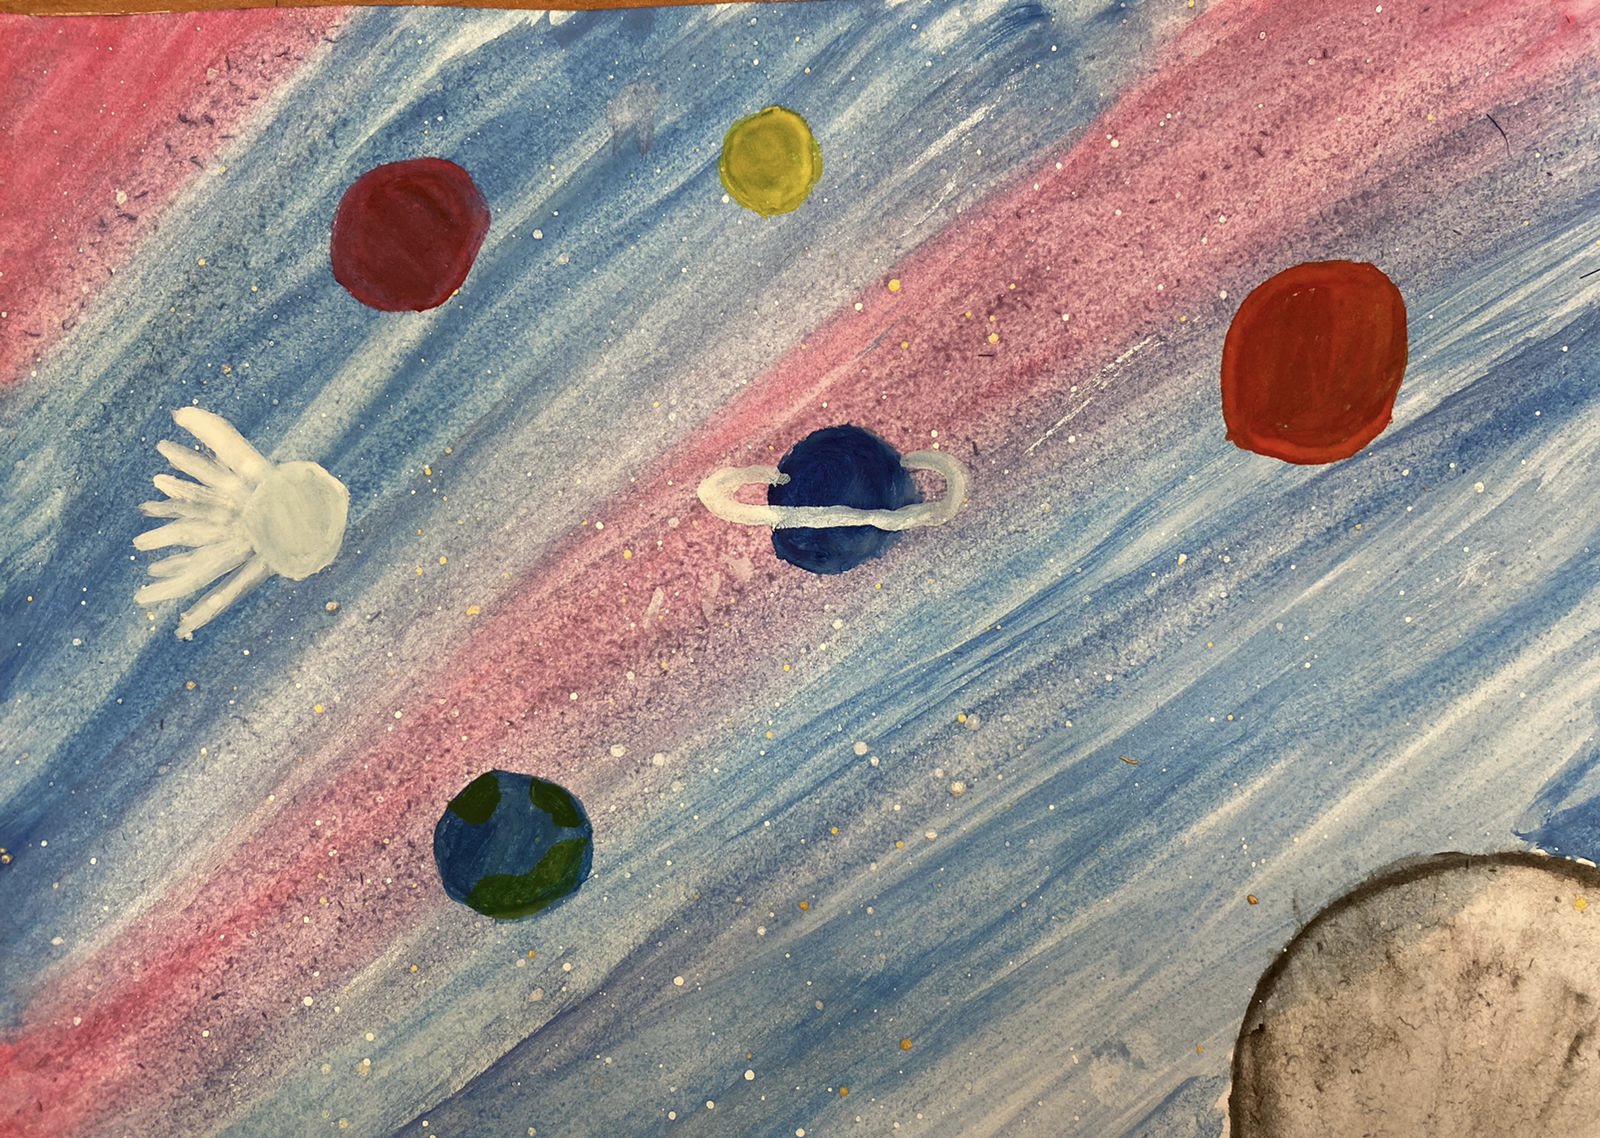 Космос рисунки цветные. Космос рисунок. Космос рисунок карандашом цветным. Нарисовать космос цветными карандашами. Рисуем космос песком.